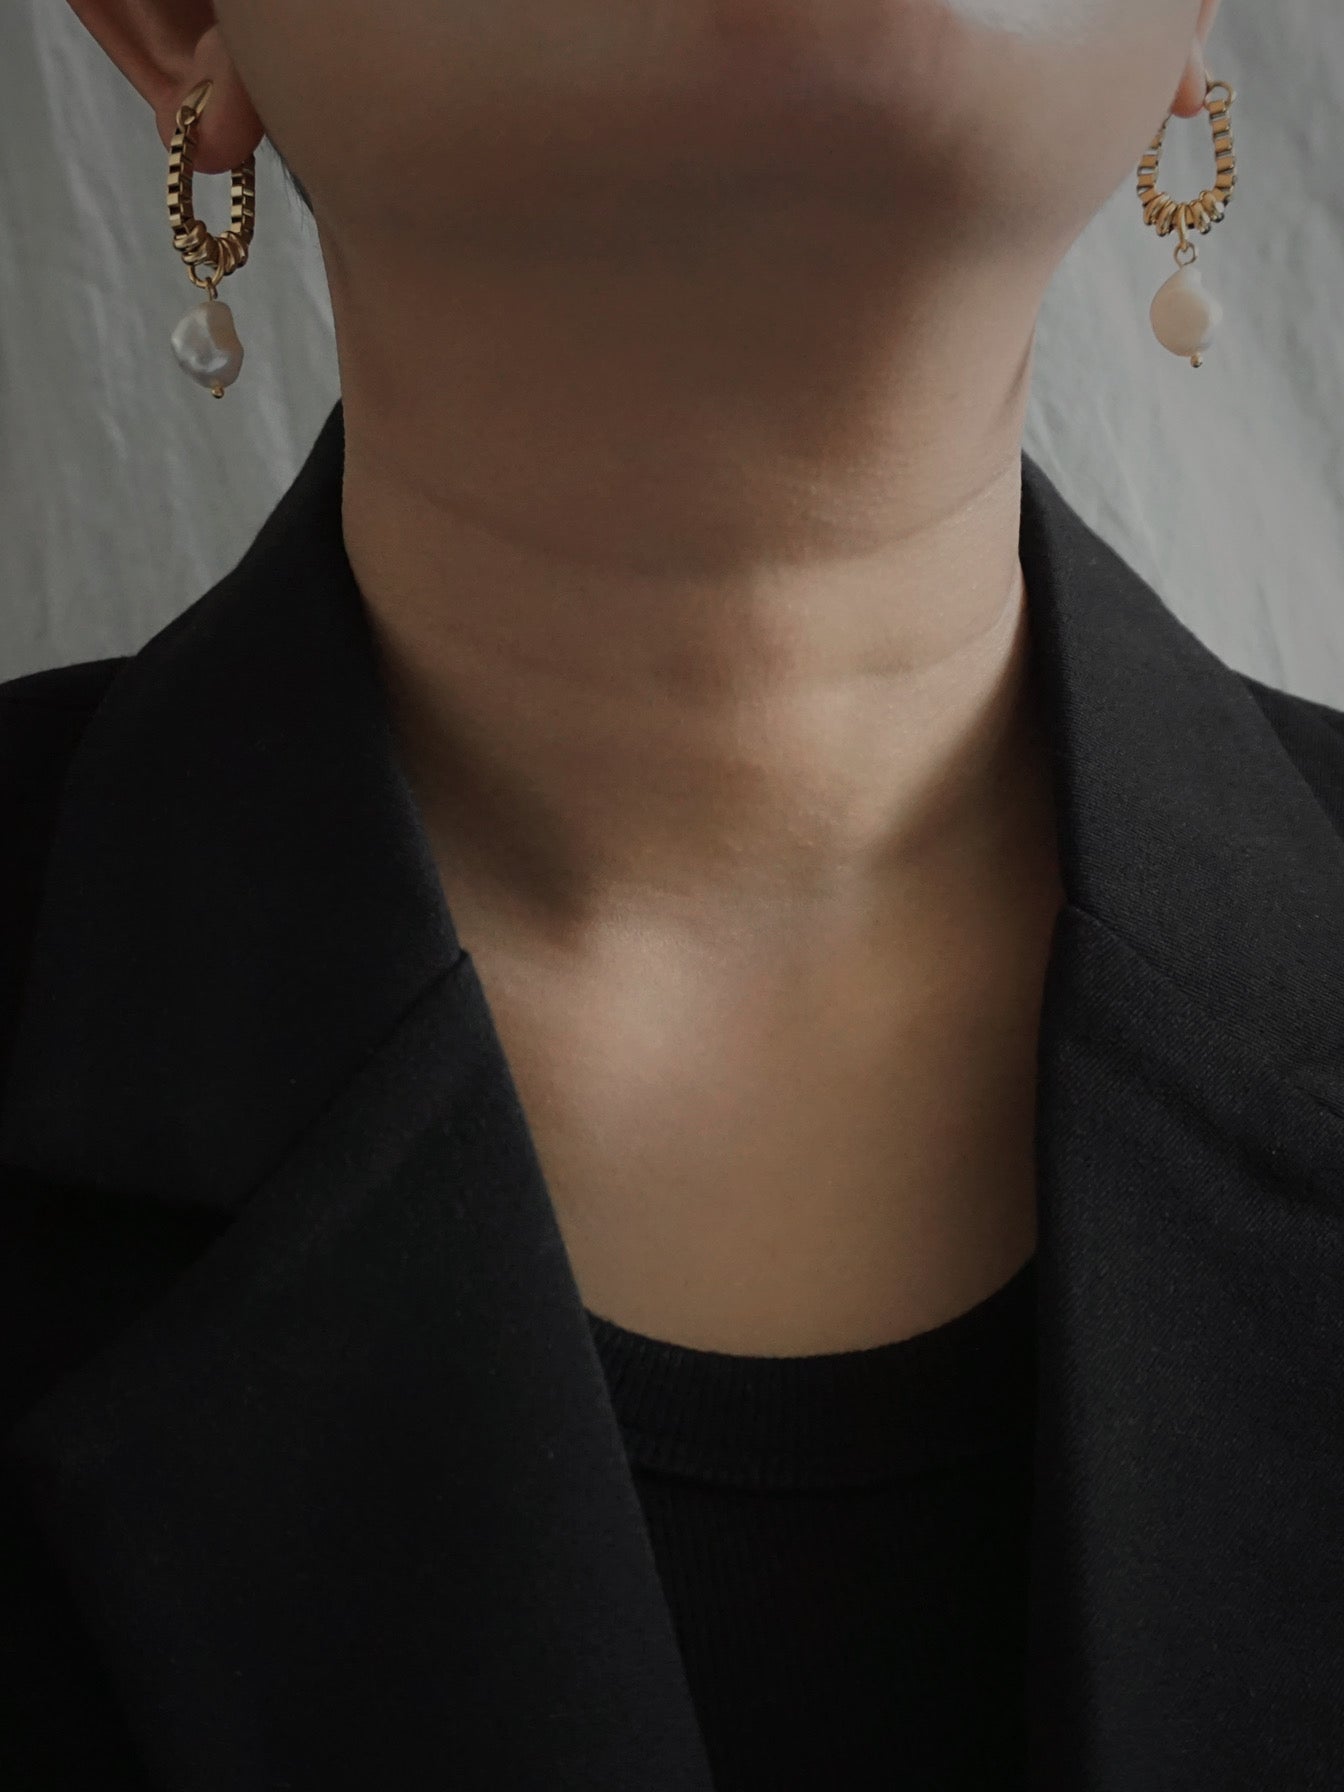 Viola Earrings